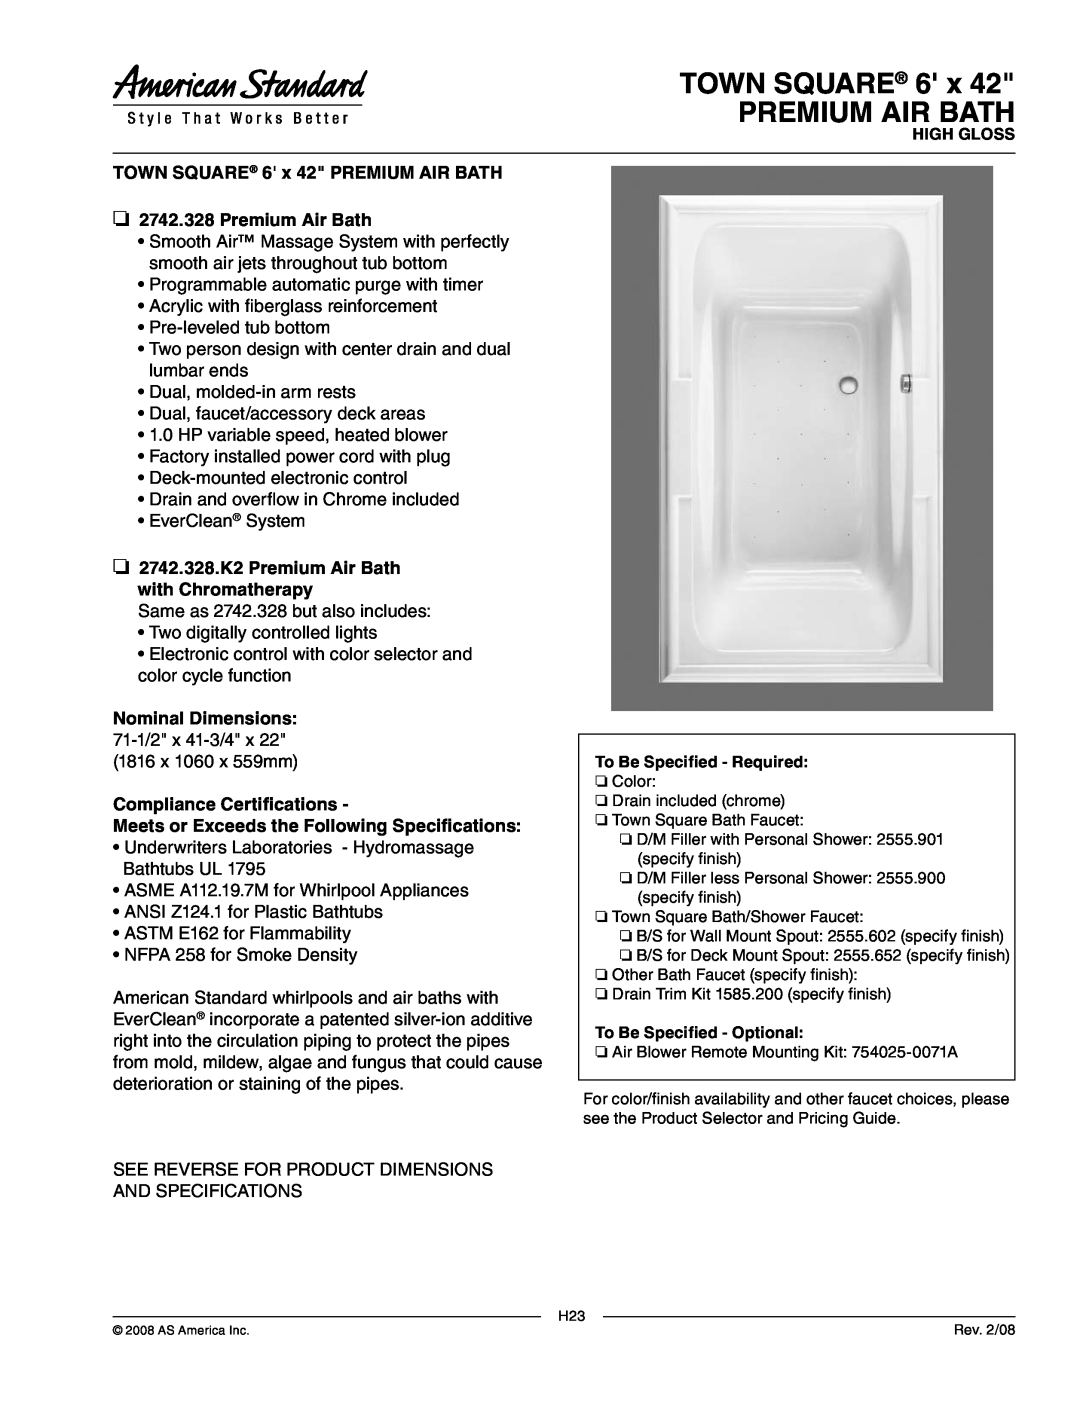 American Standard dimensions TOWN SQUARE 6 x PREMIUM AIR BATH, 2742.328.K2 Premium Air Bath with Chromatherapy 